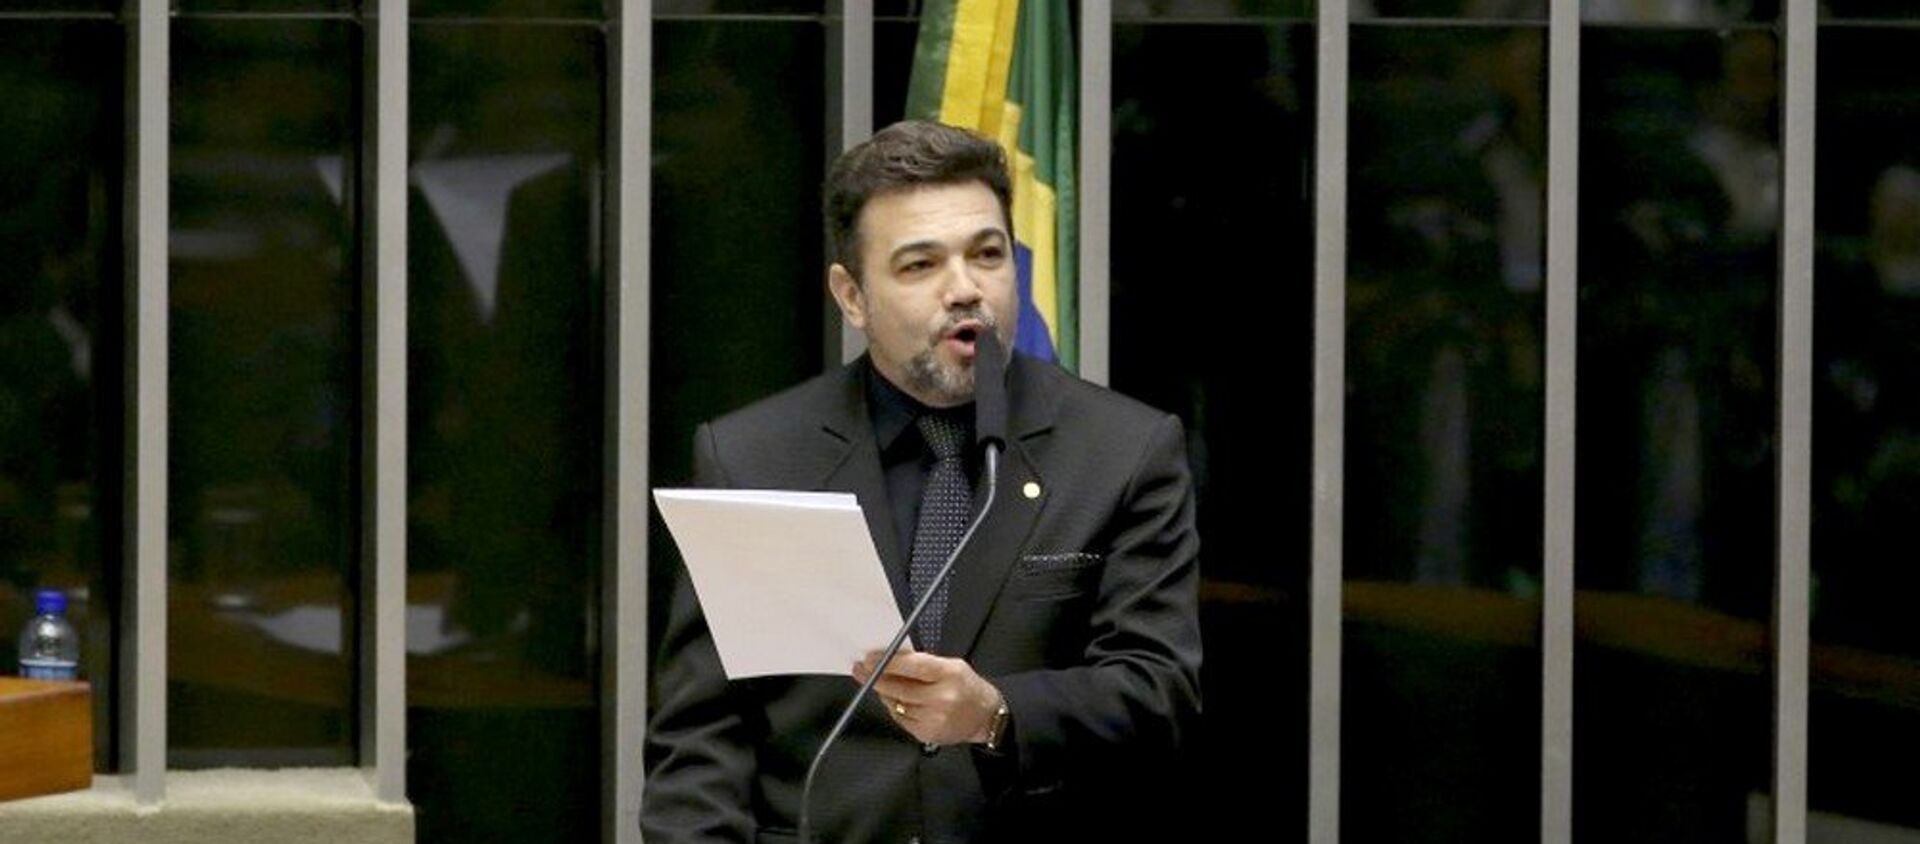 Acusado de assédio, deputadas pedem abertura de processo contra Marco Feliciano no Conselho de Ética - Sputnik Brasil, 1920, 10.08.2016